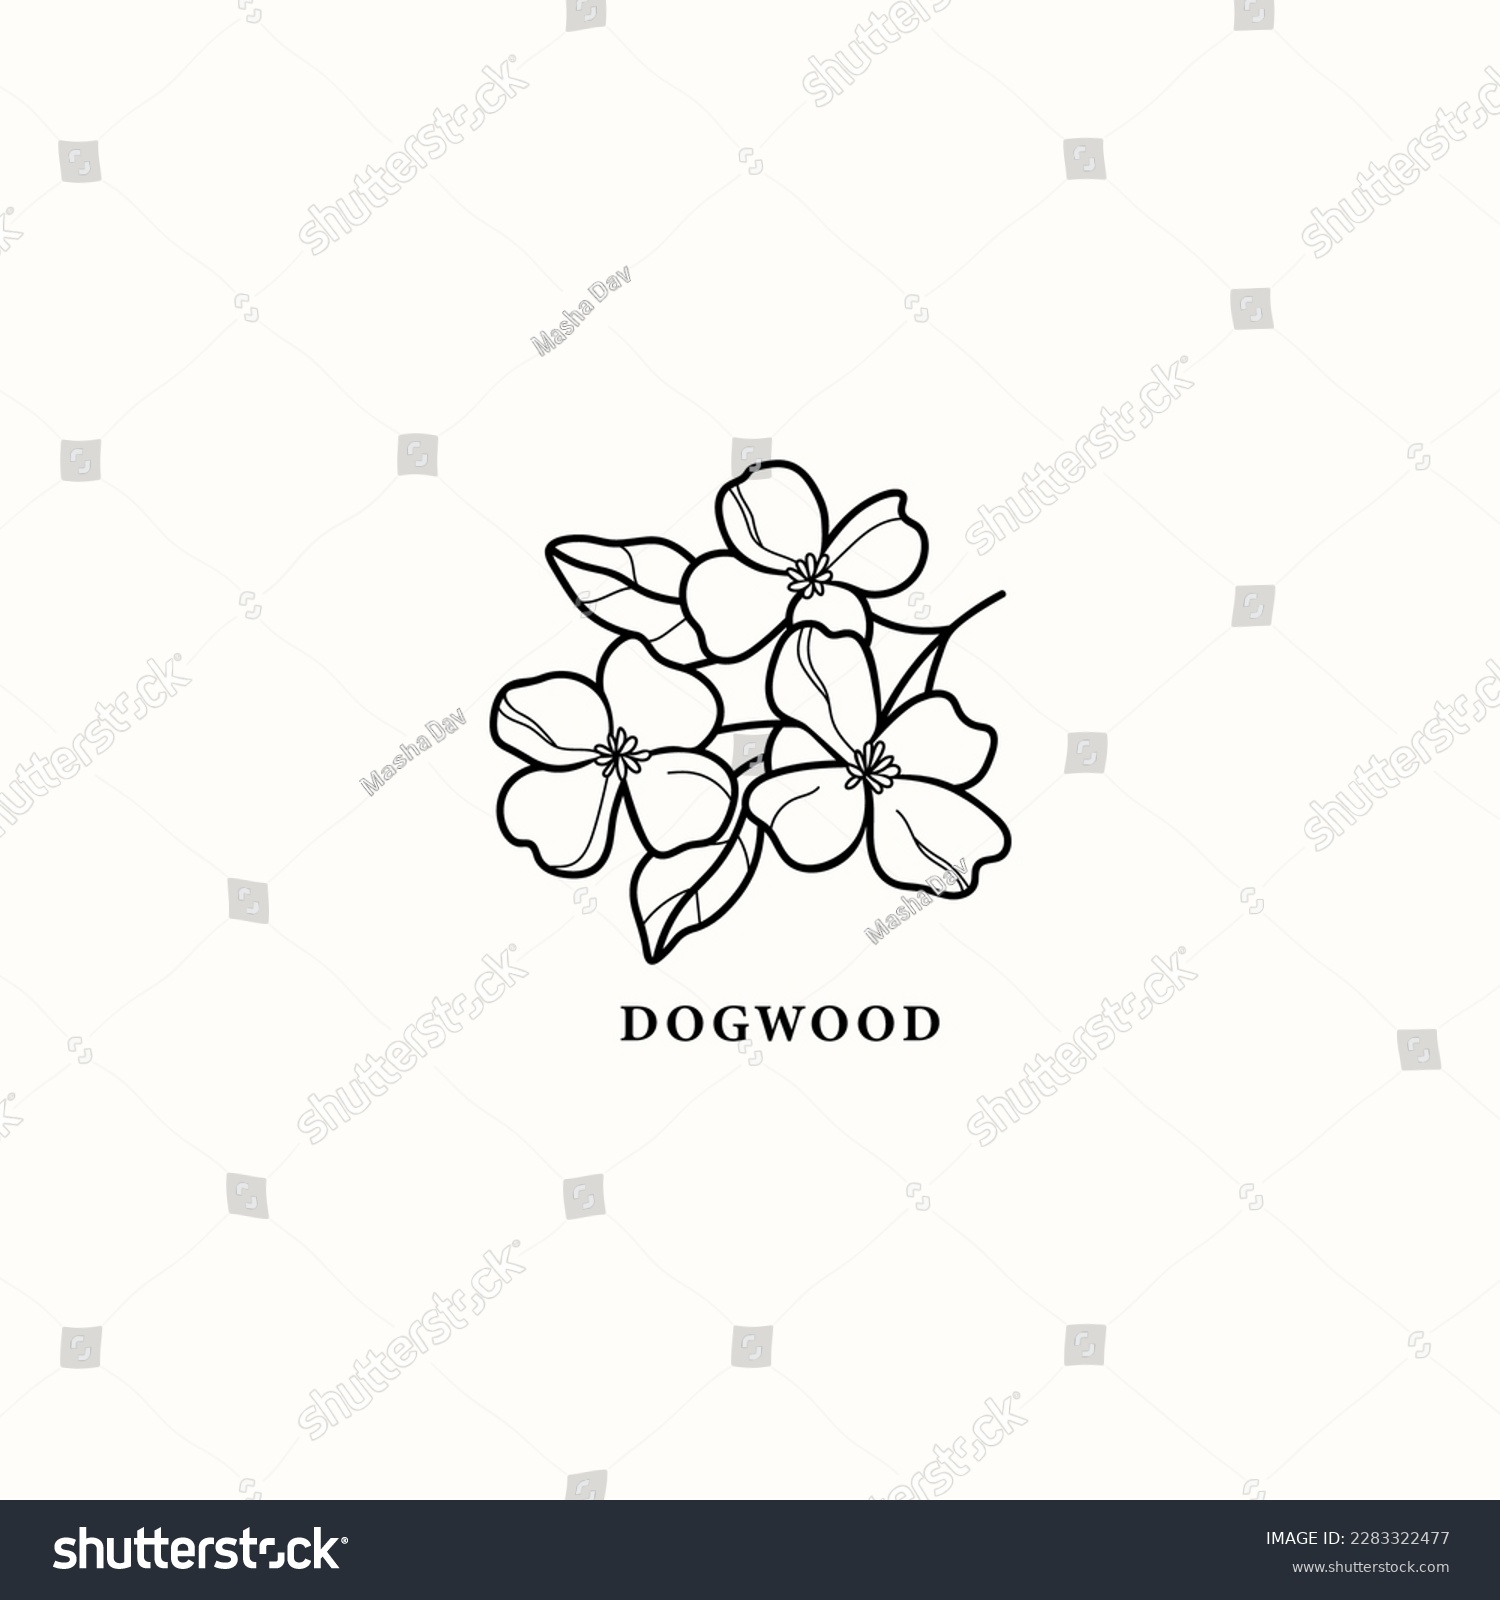 SVG of Line art dogwood branch illustration svg